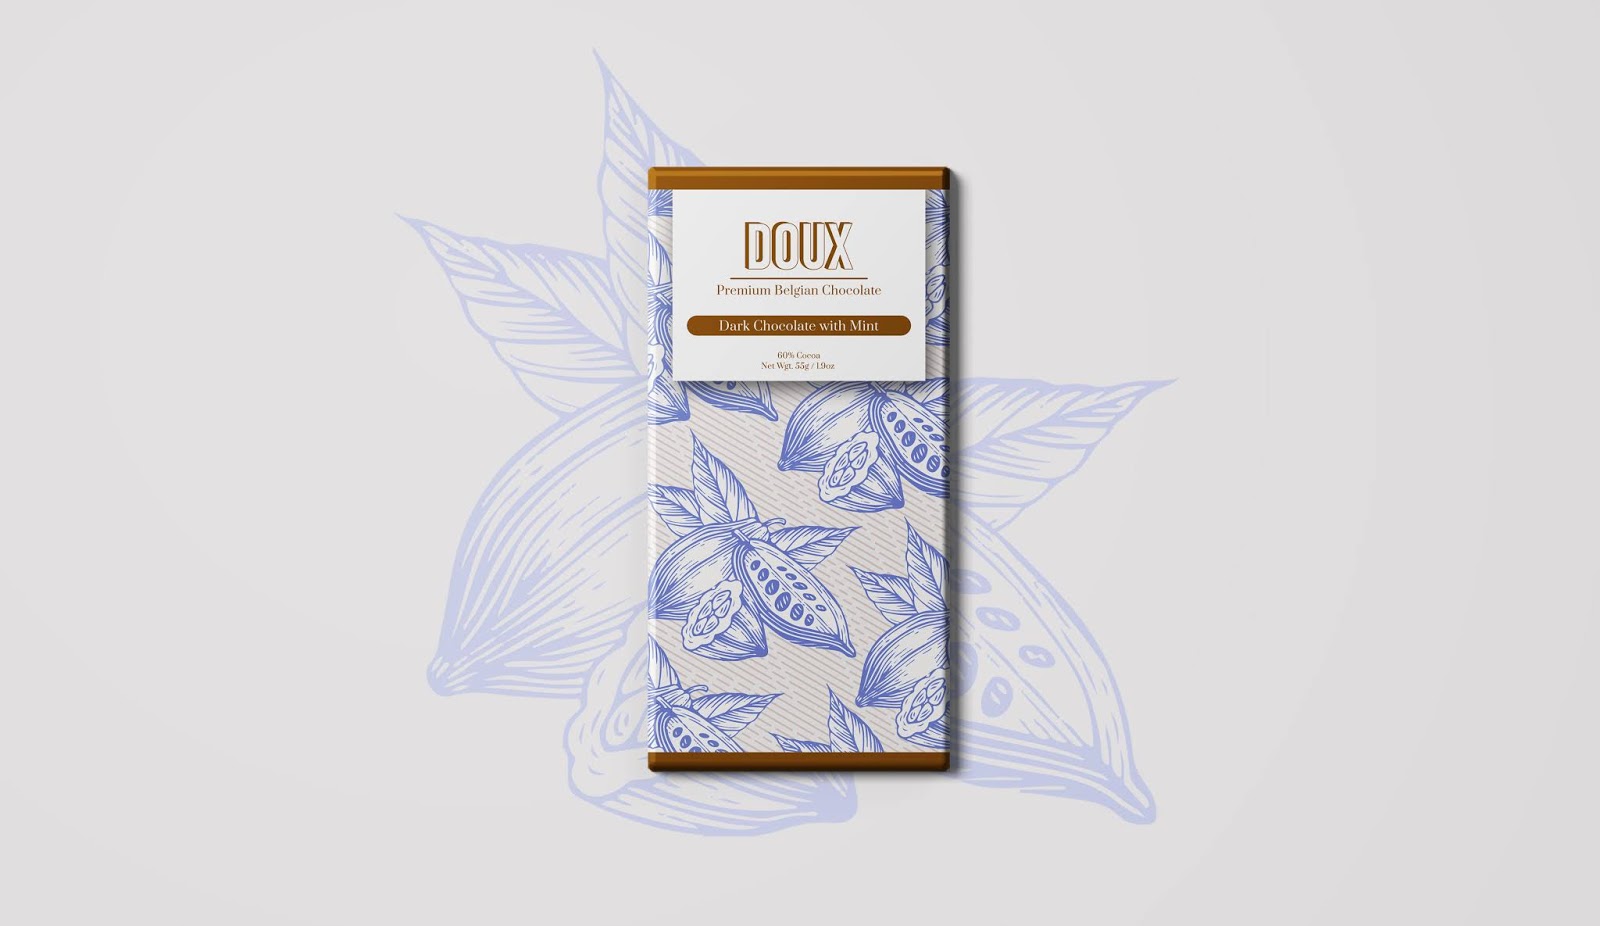 Branding for DOUX — Belgian Chocolate / peopleofdesign